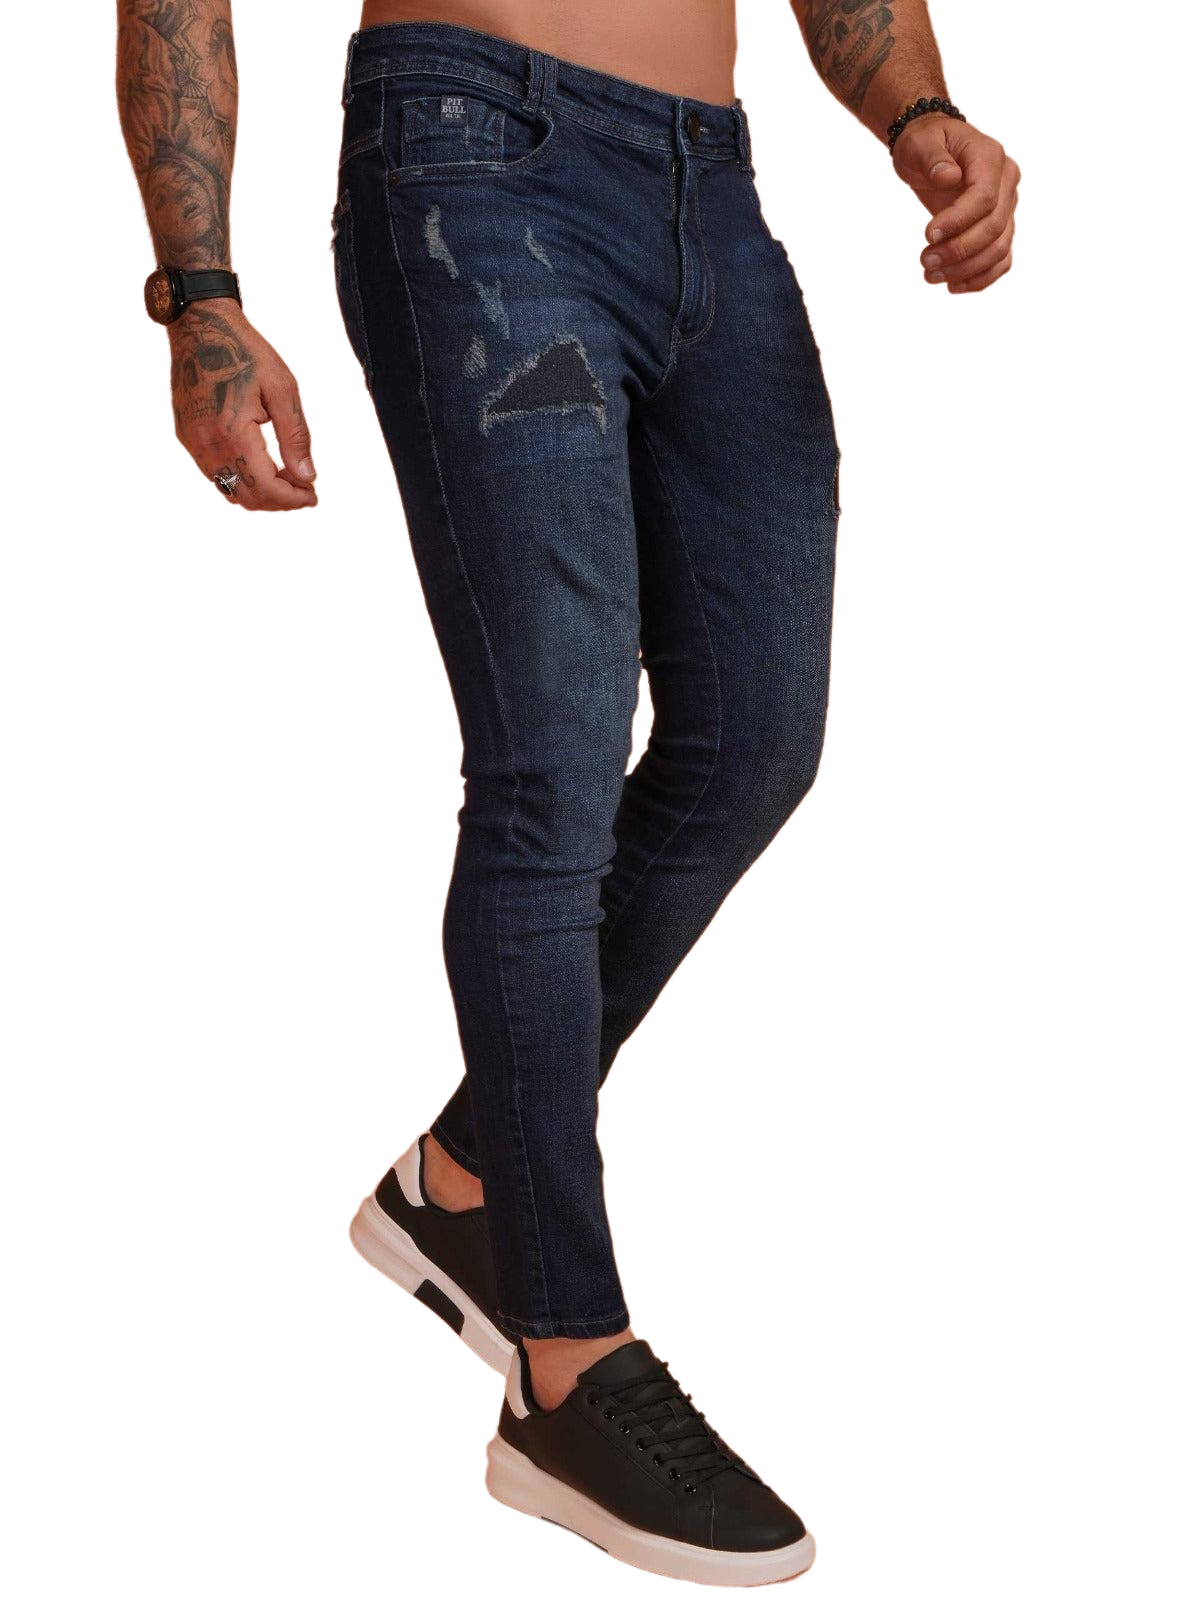 Calça Jeans Masculina Pit Bull 79981